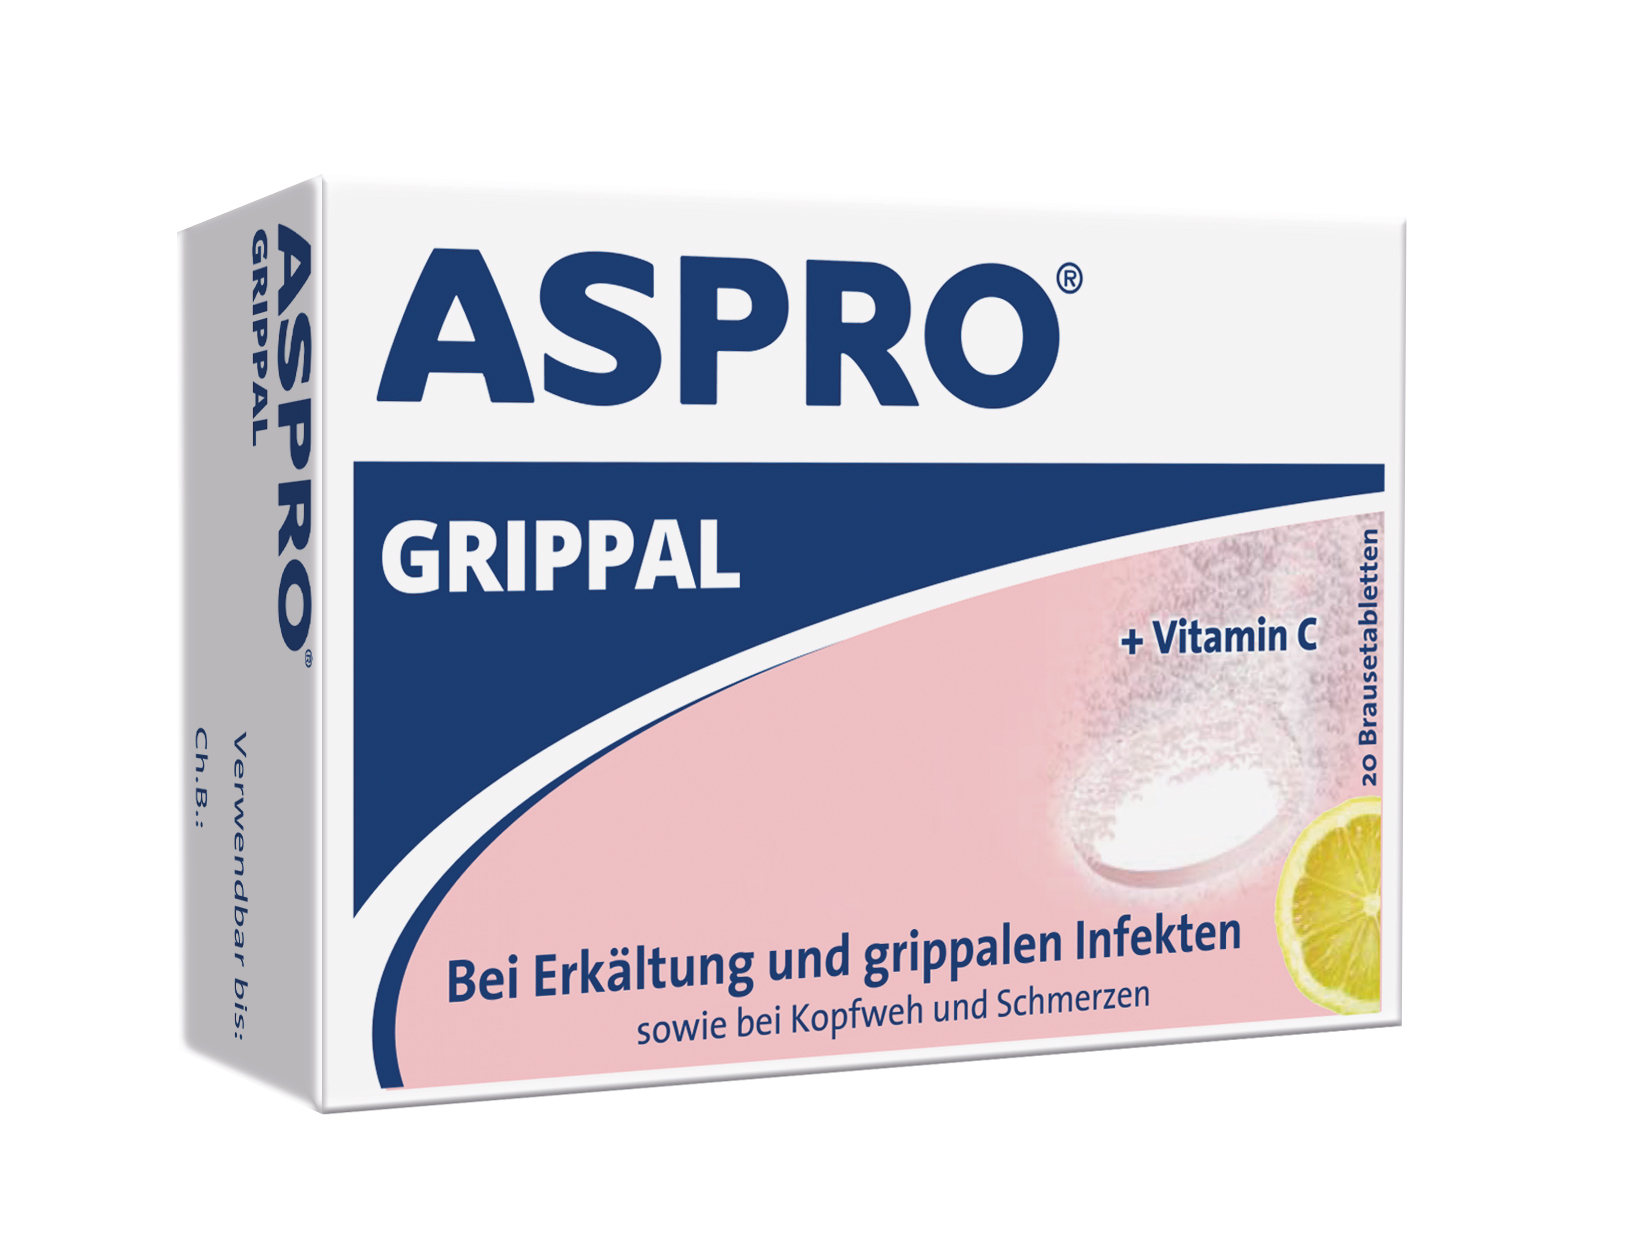 Aspro Grippal 500 mg ASS + 250 mg Vit C - Brausetabletten